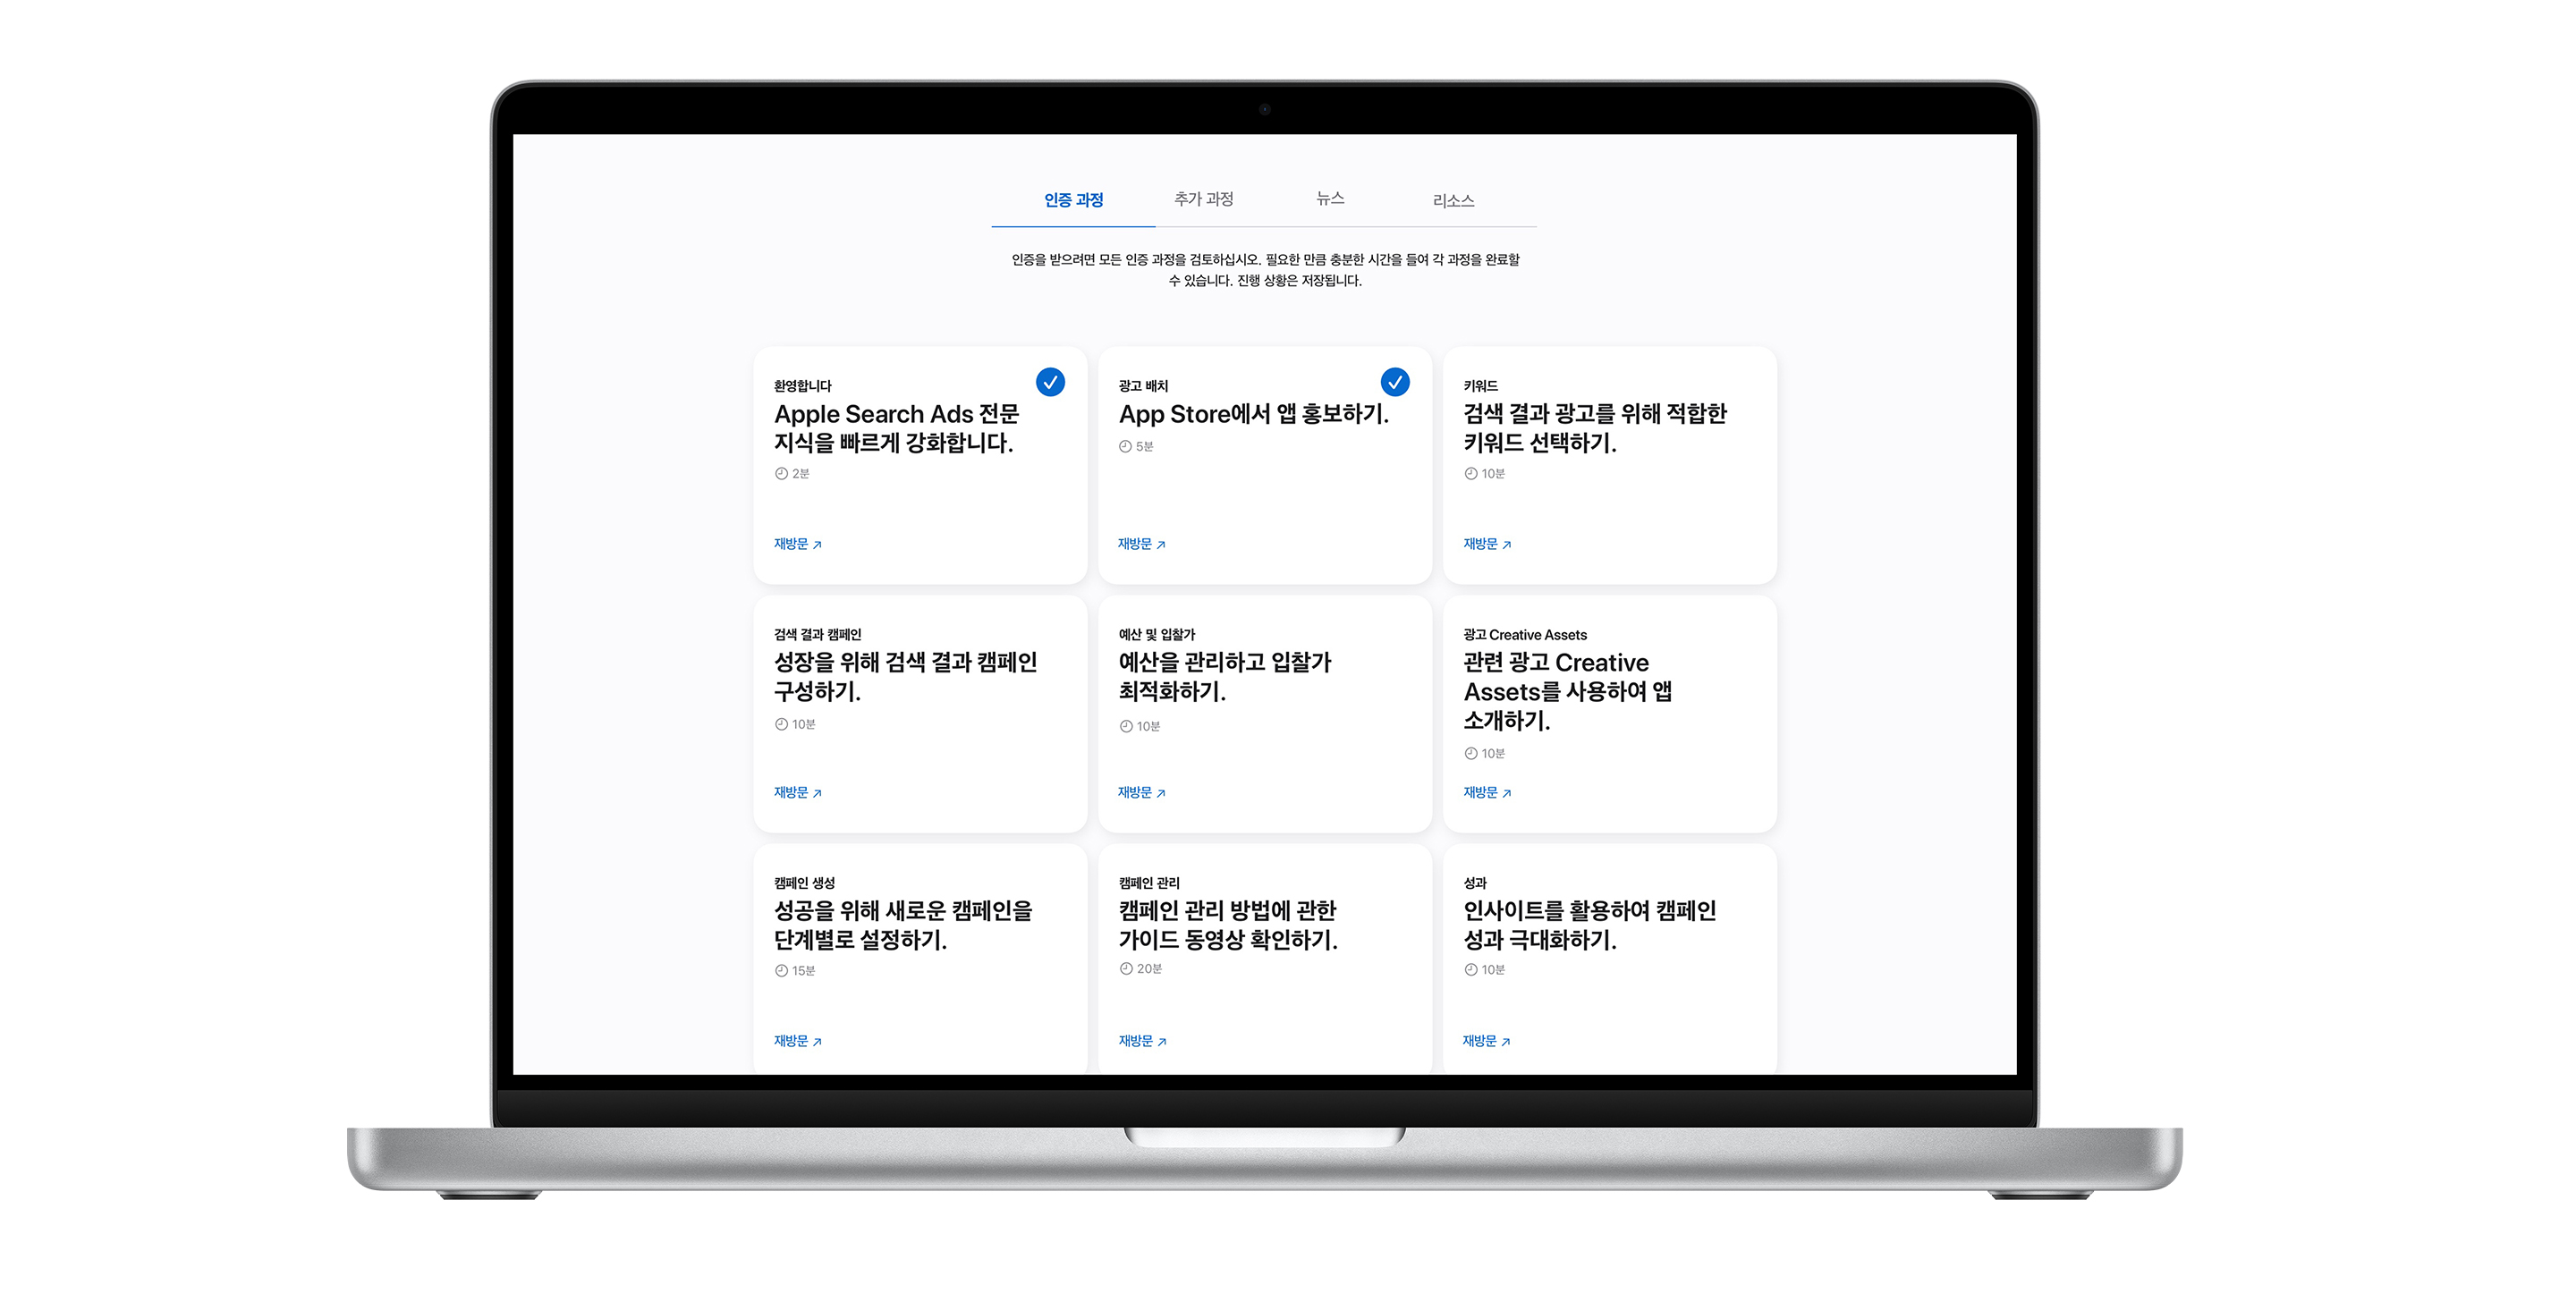 9개의 강의 모듈이 표시된 Apple Search Ads 인증 과정 페이지. 처음 두 교육에 보이는 파란색 체크 표시는 과정이 완료되었음을 나타냅니다.